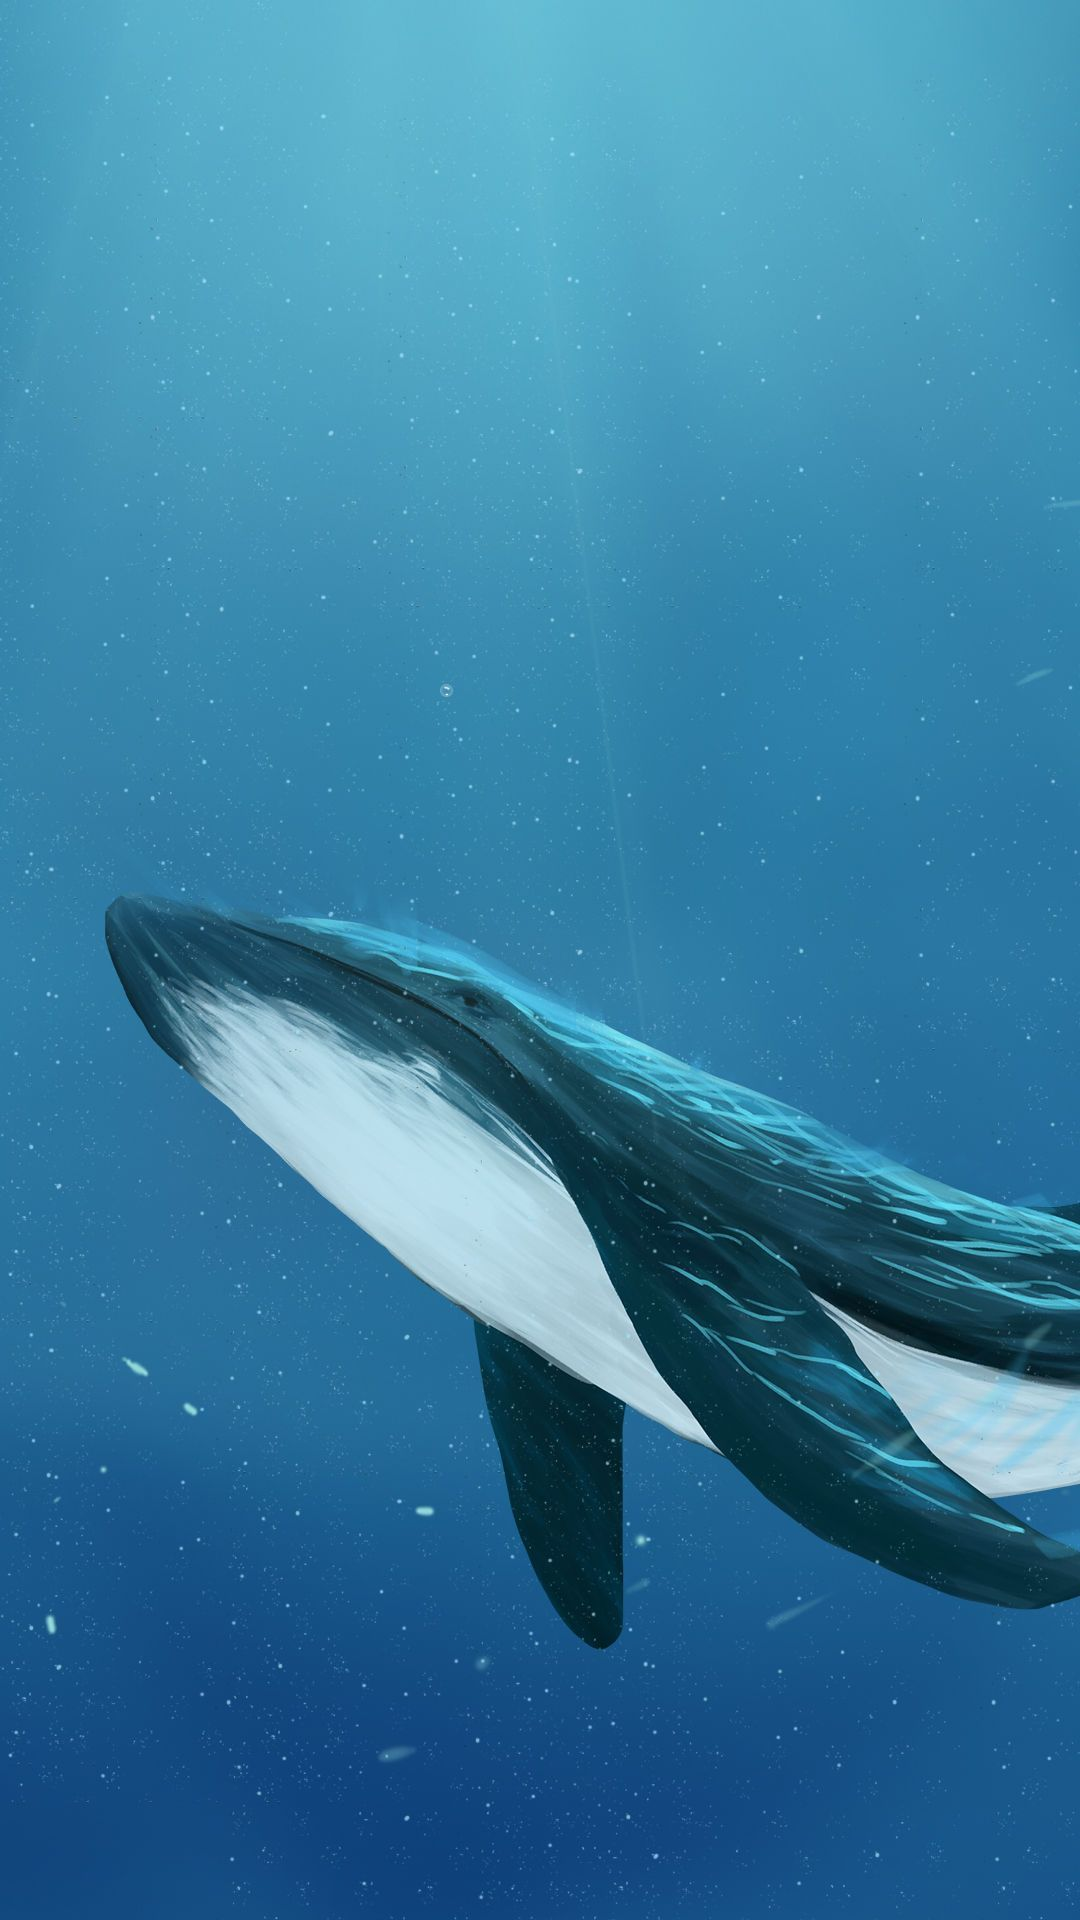 有没有关于鲸鱼的壁纸呢 很喜欢 一直找不到好看的？ - 知乎